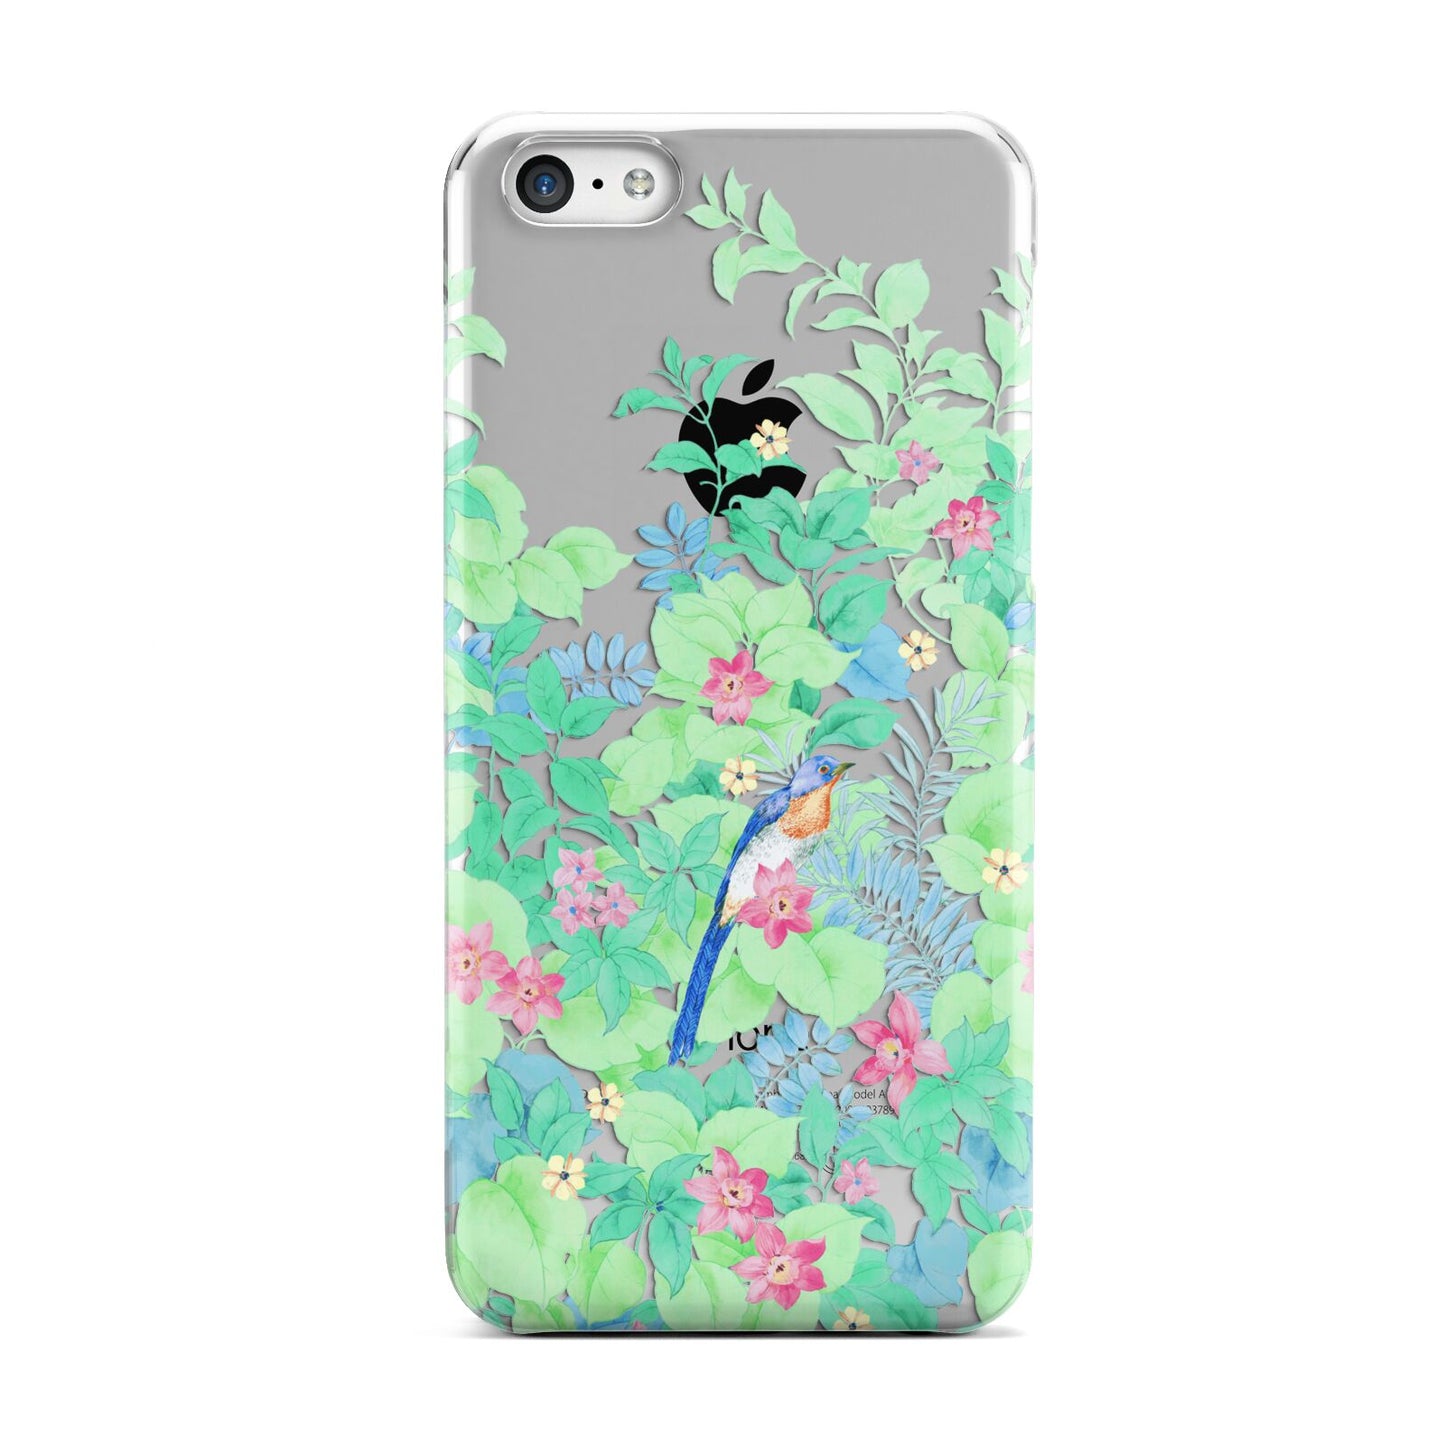 Watercolour Floral Apple iPhone 5c Case